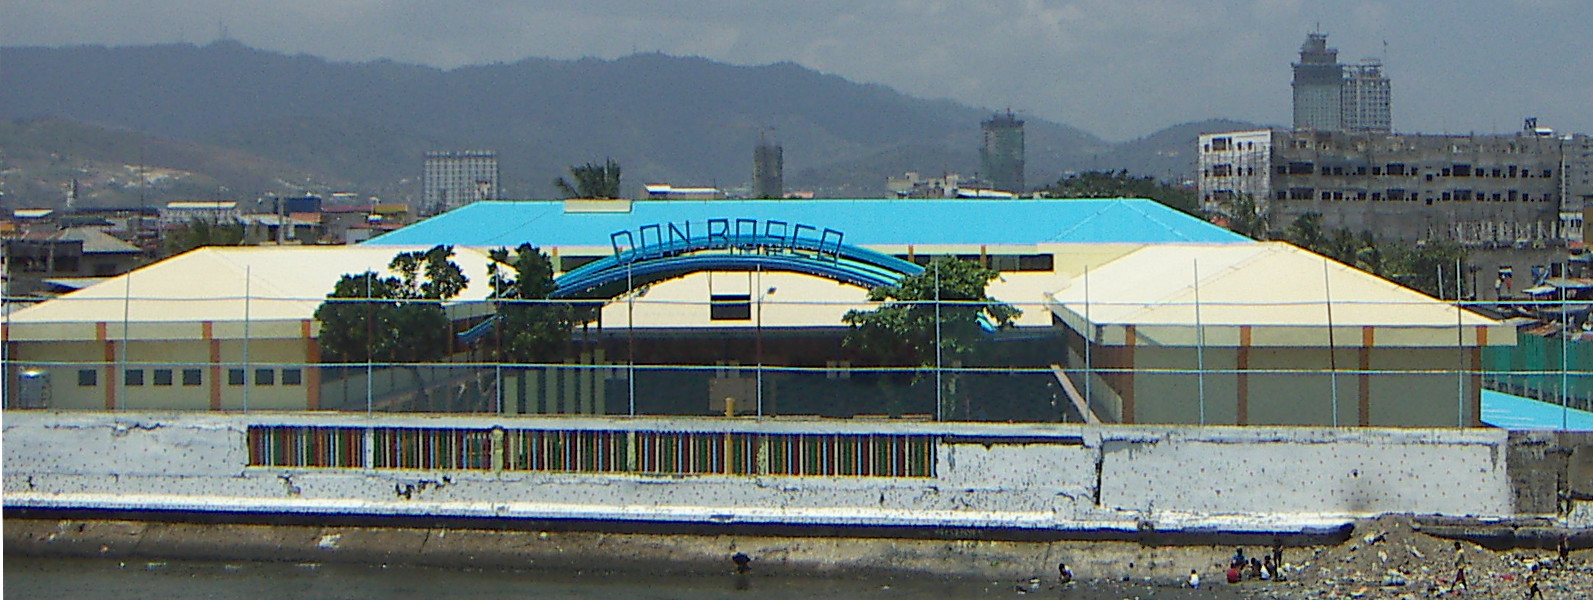 Don Bosco training center